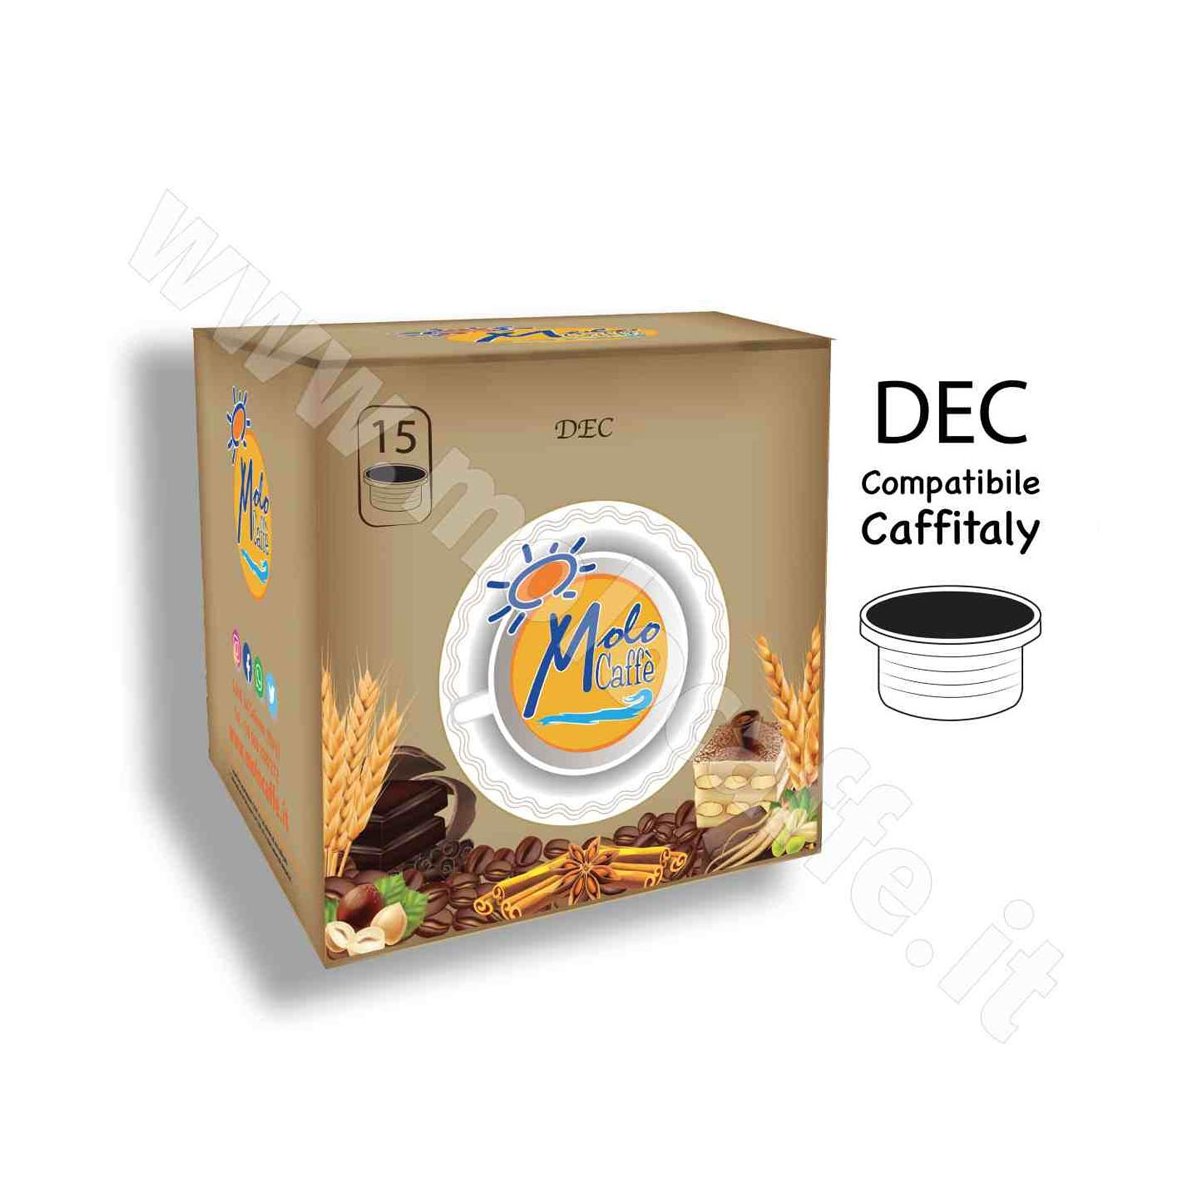 DEC Capsule Compatibili CAFFITALY - Box 15 Pz DECAFFEINATO